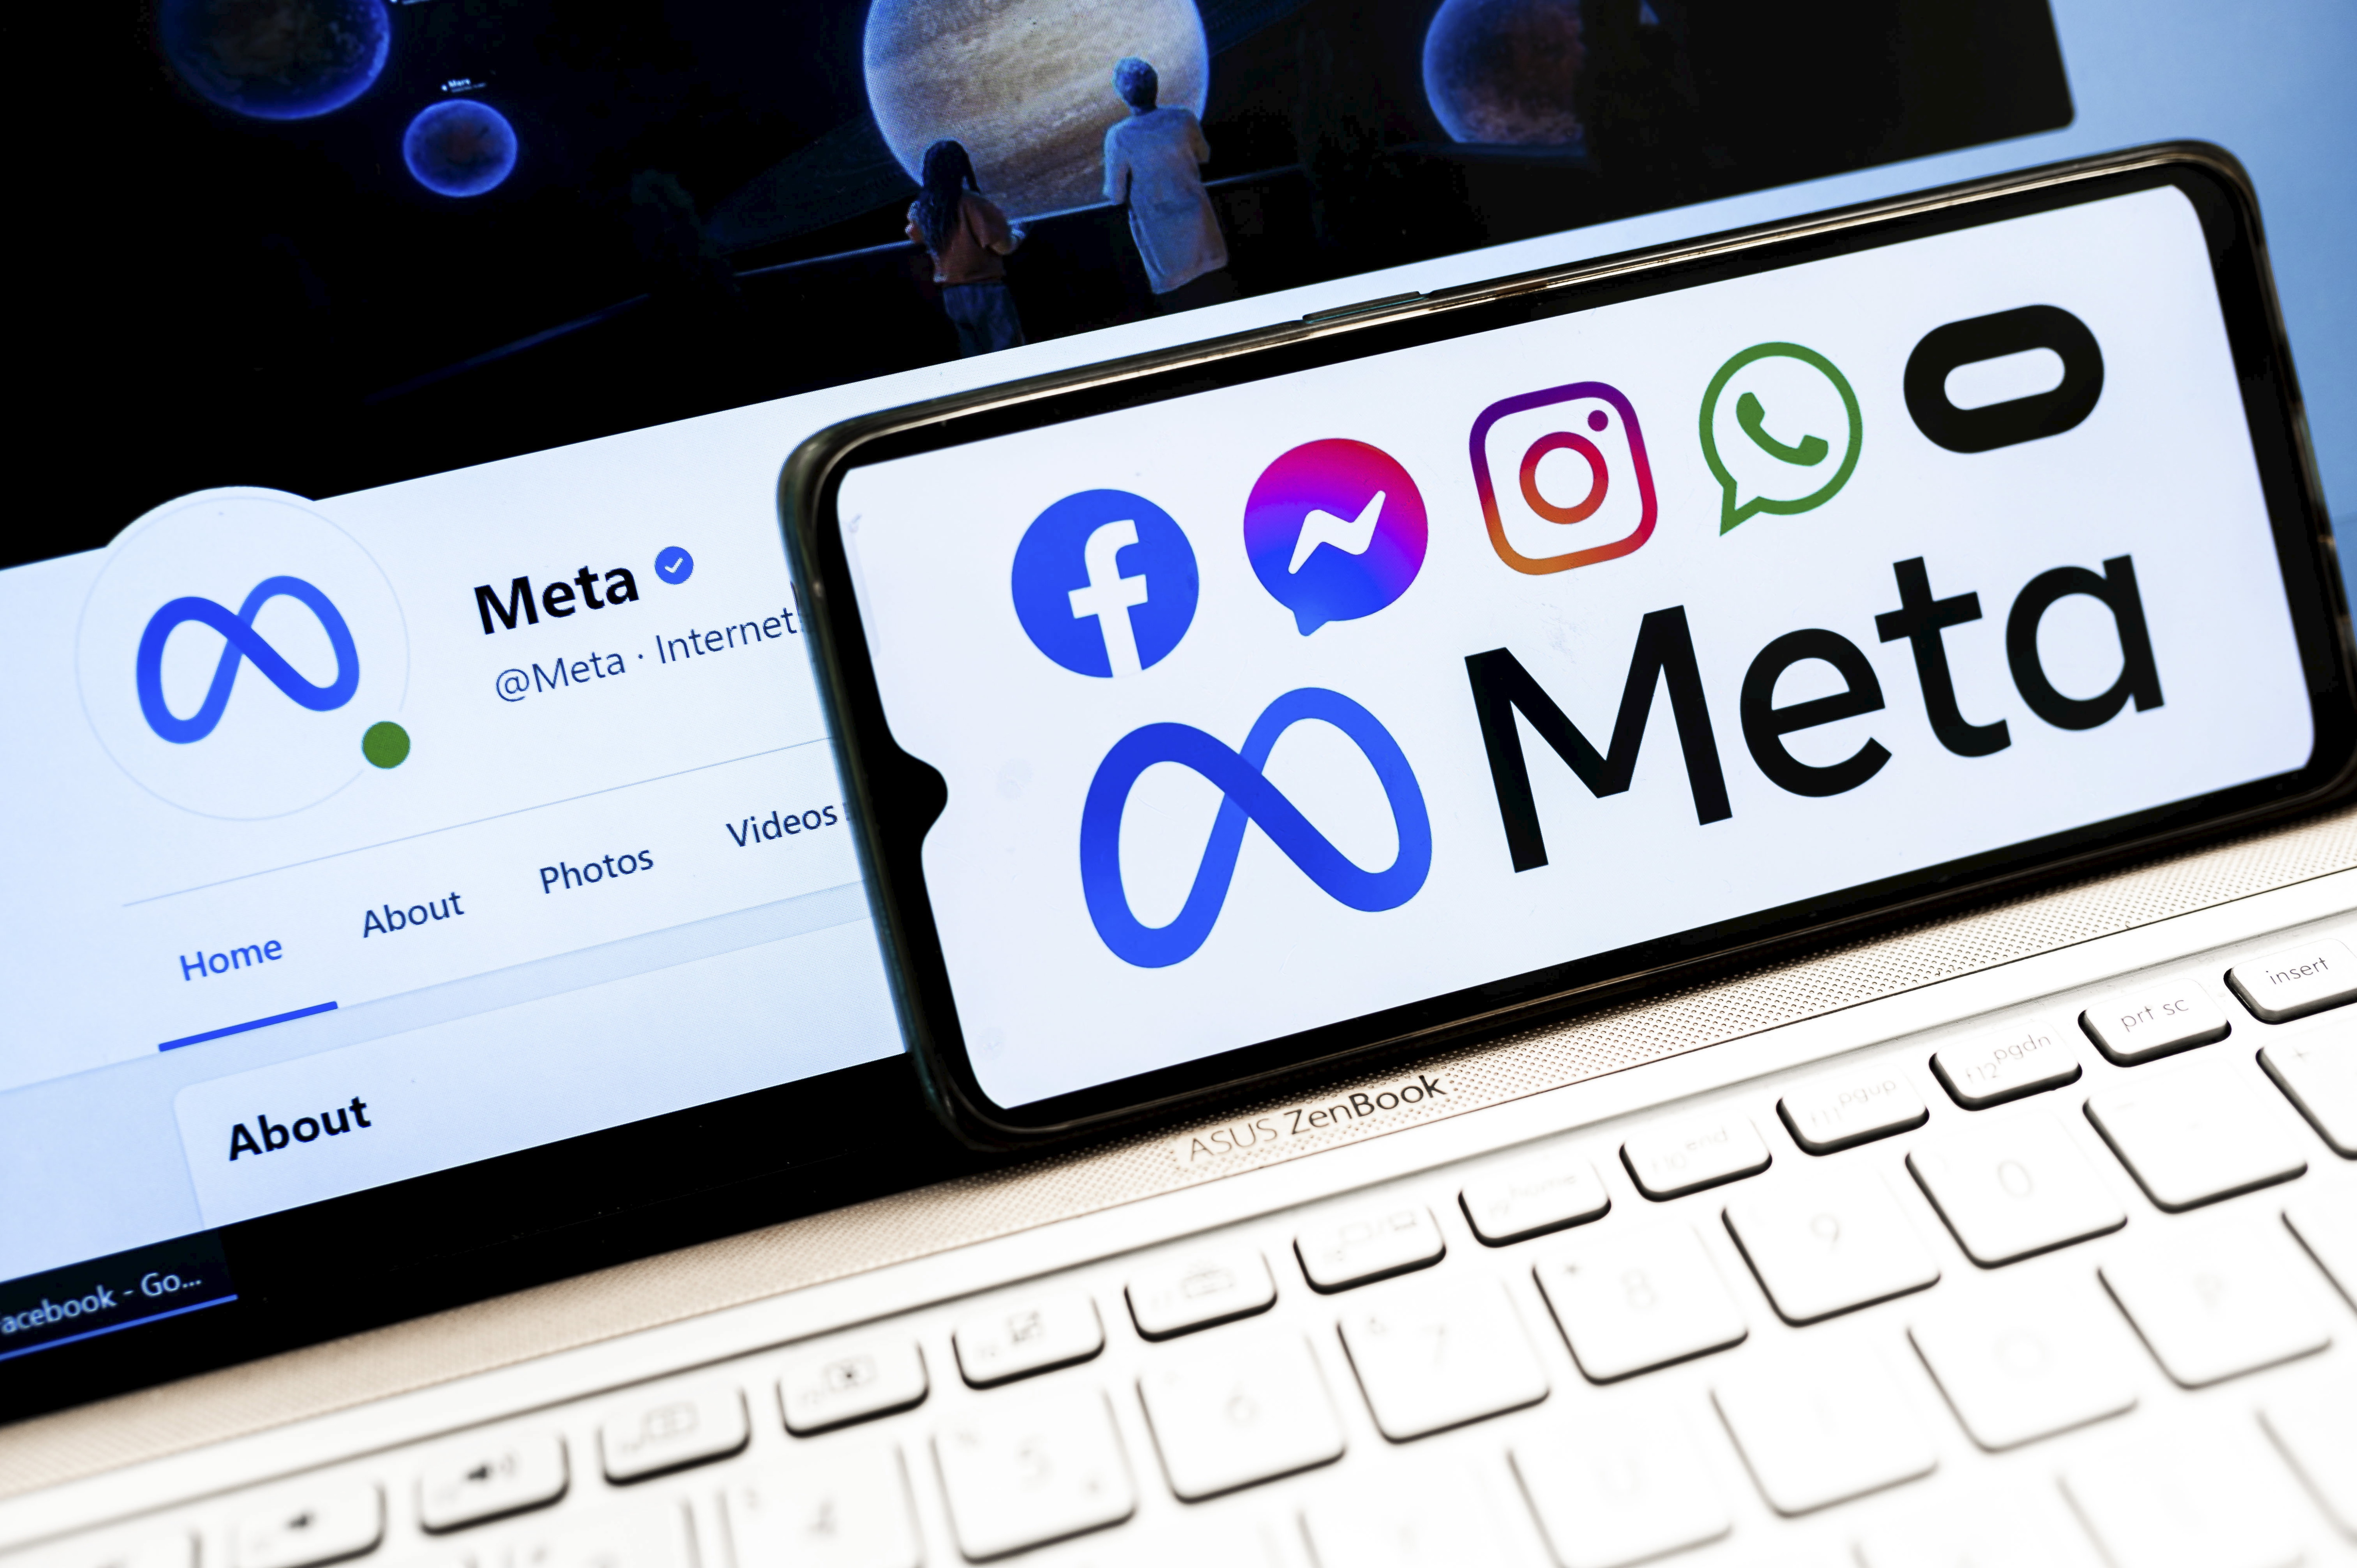 De Facebook Inc. à Meta, pourquoi les entreprises changent-elles de nom ?